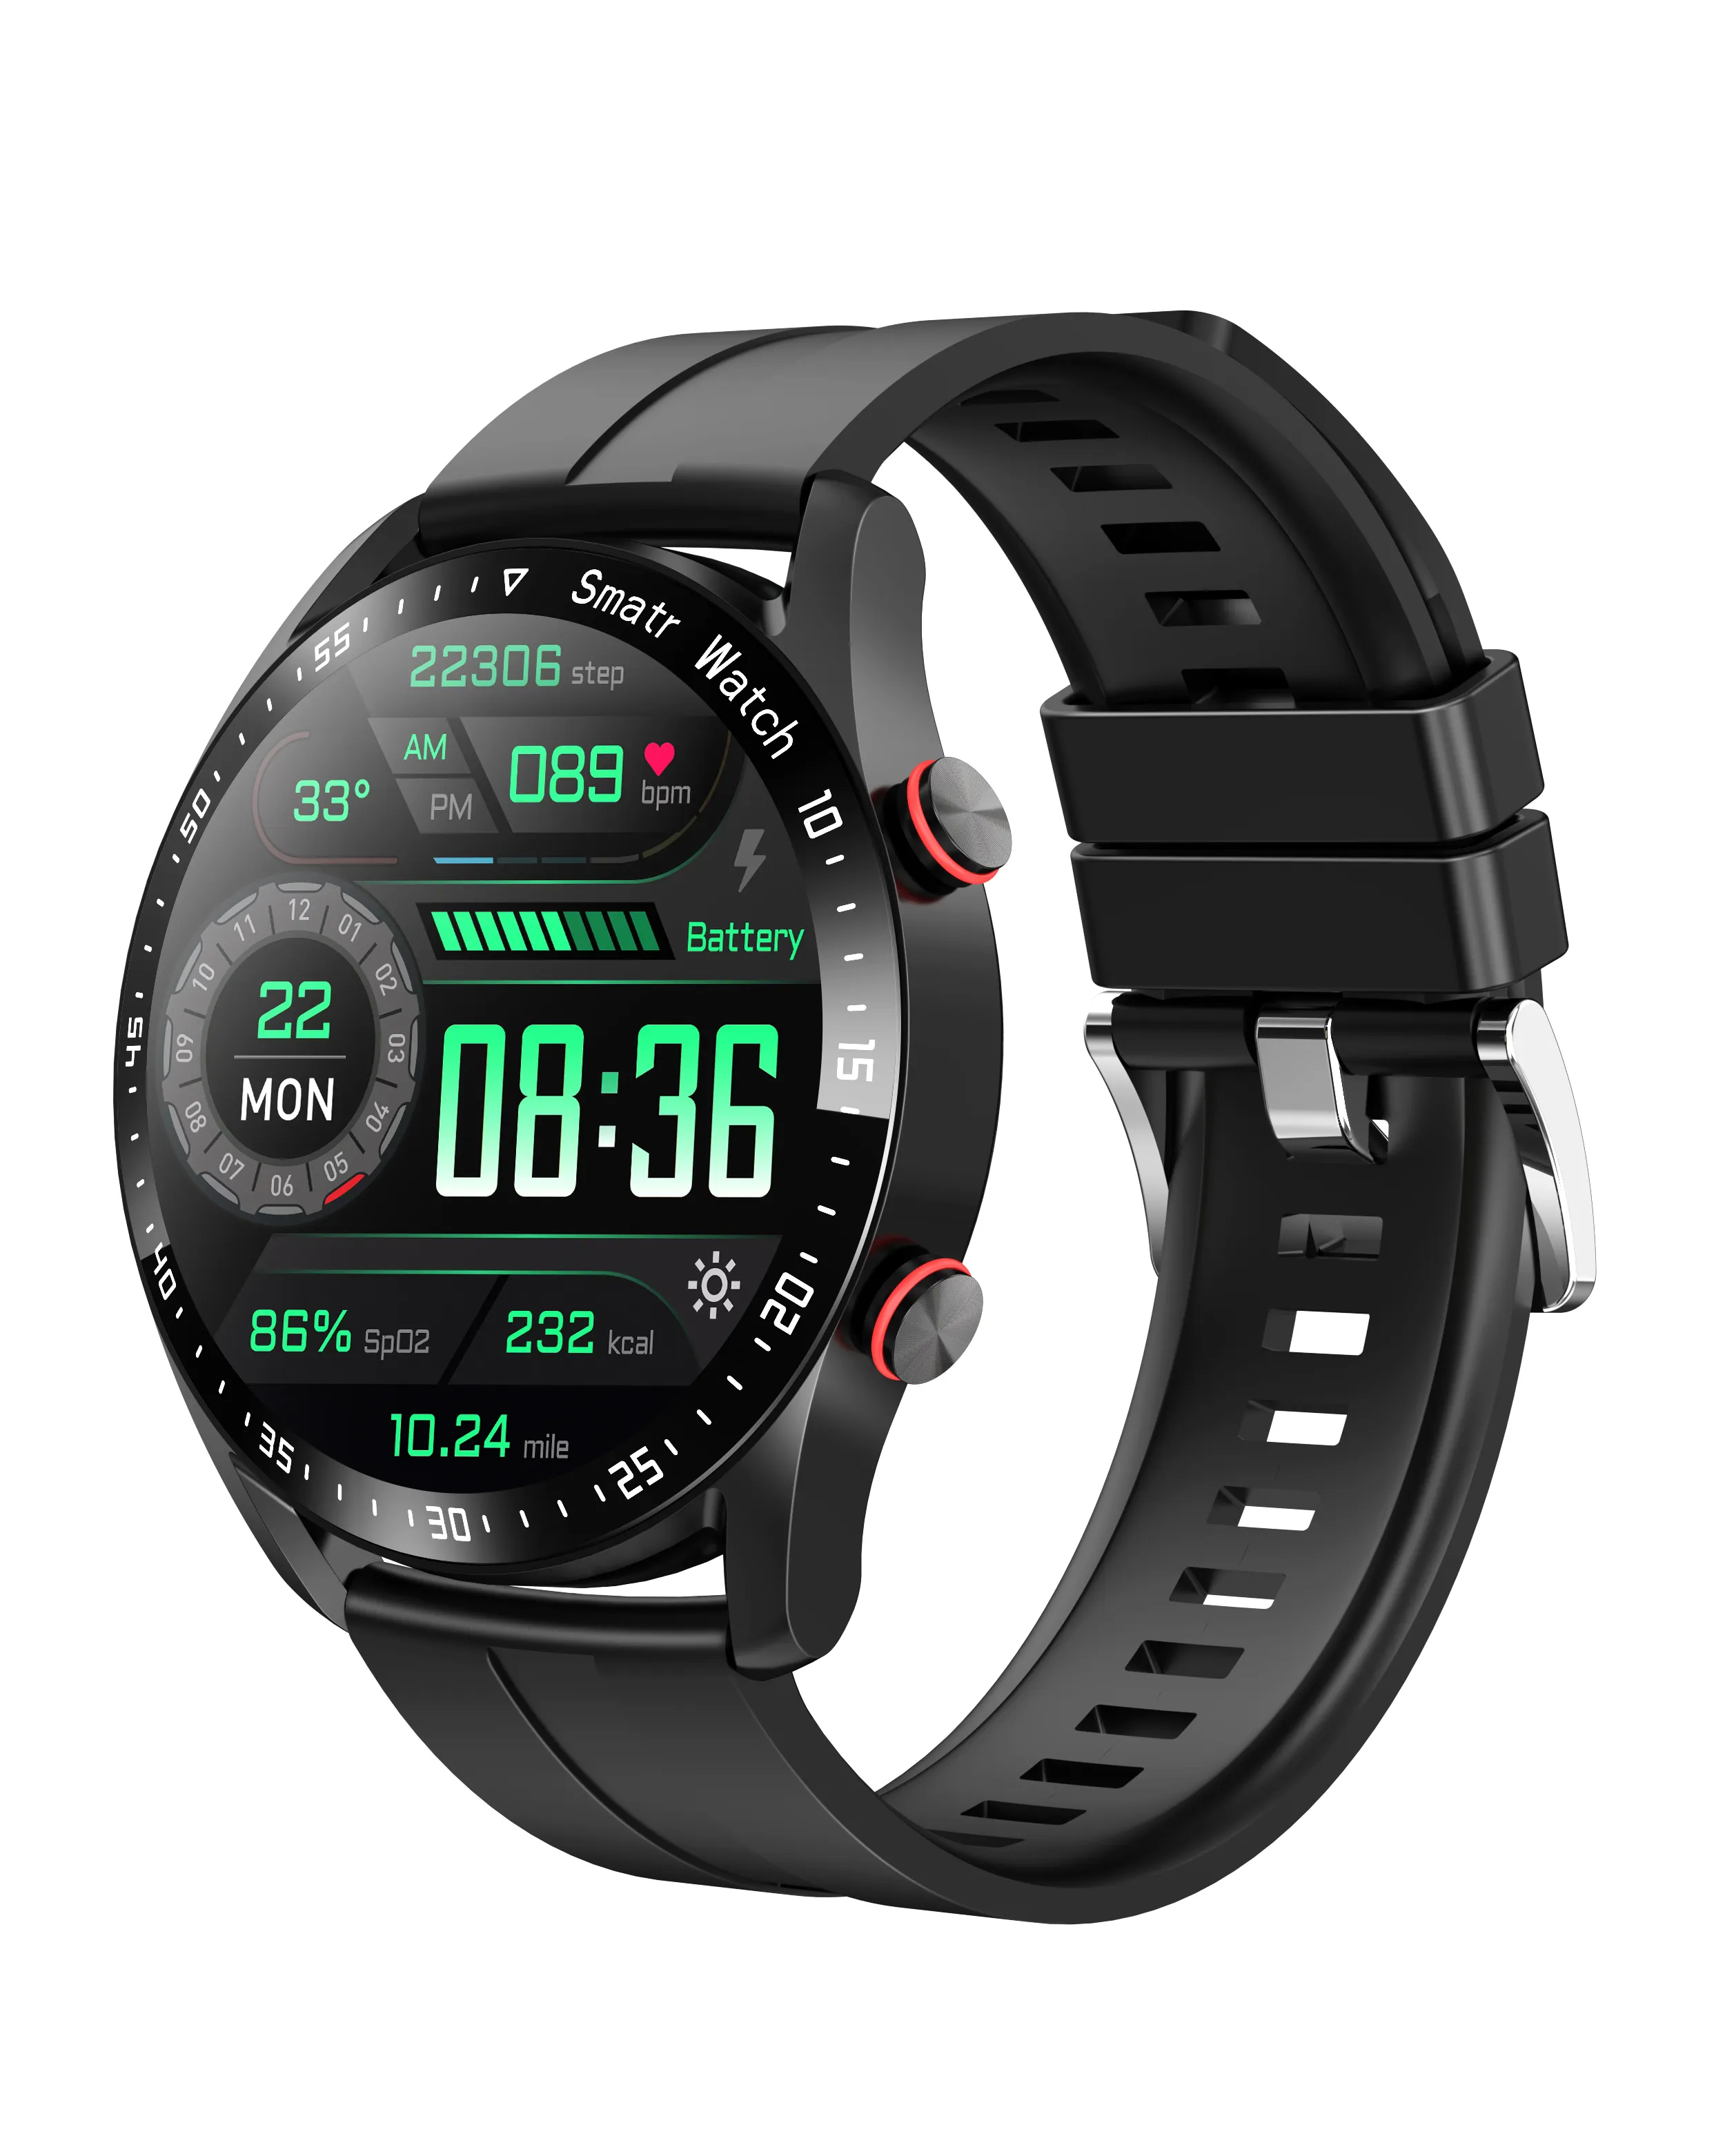 Sport Round Screen Smartwatch HW20 Luxus Smart Armband Neu kommende Sprach steuerung Dialer Herzfrequenz Bluts auer stoff Smart Band